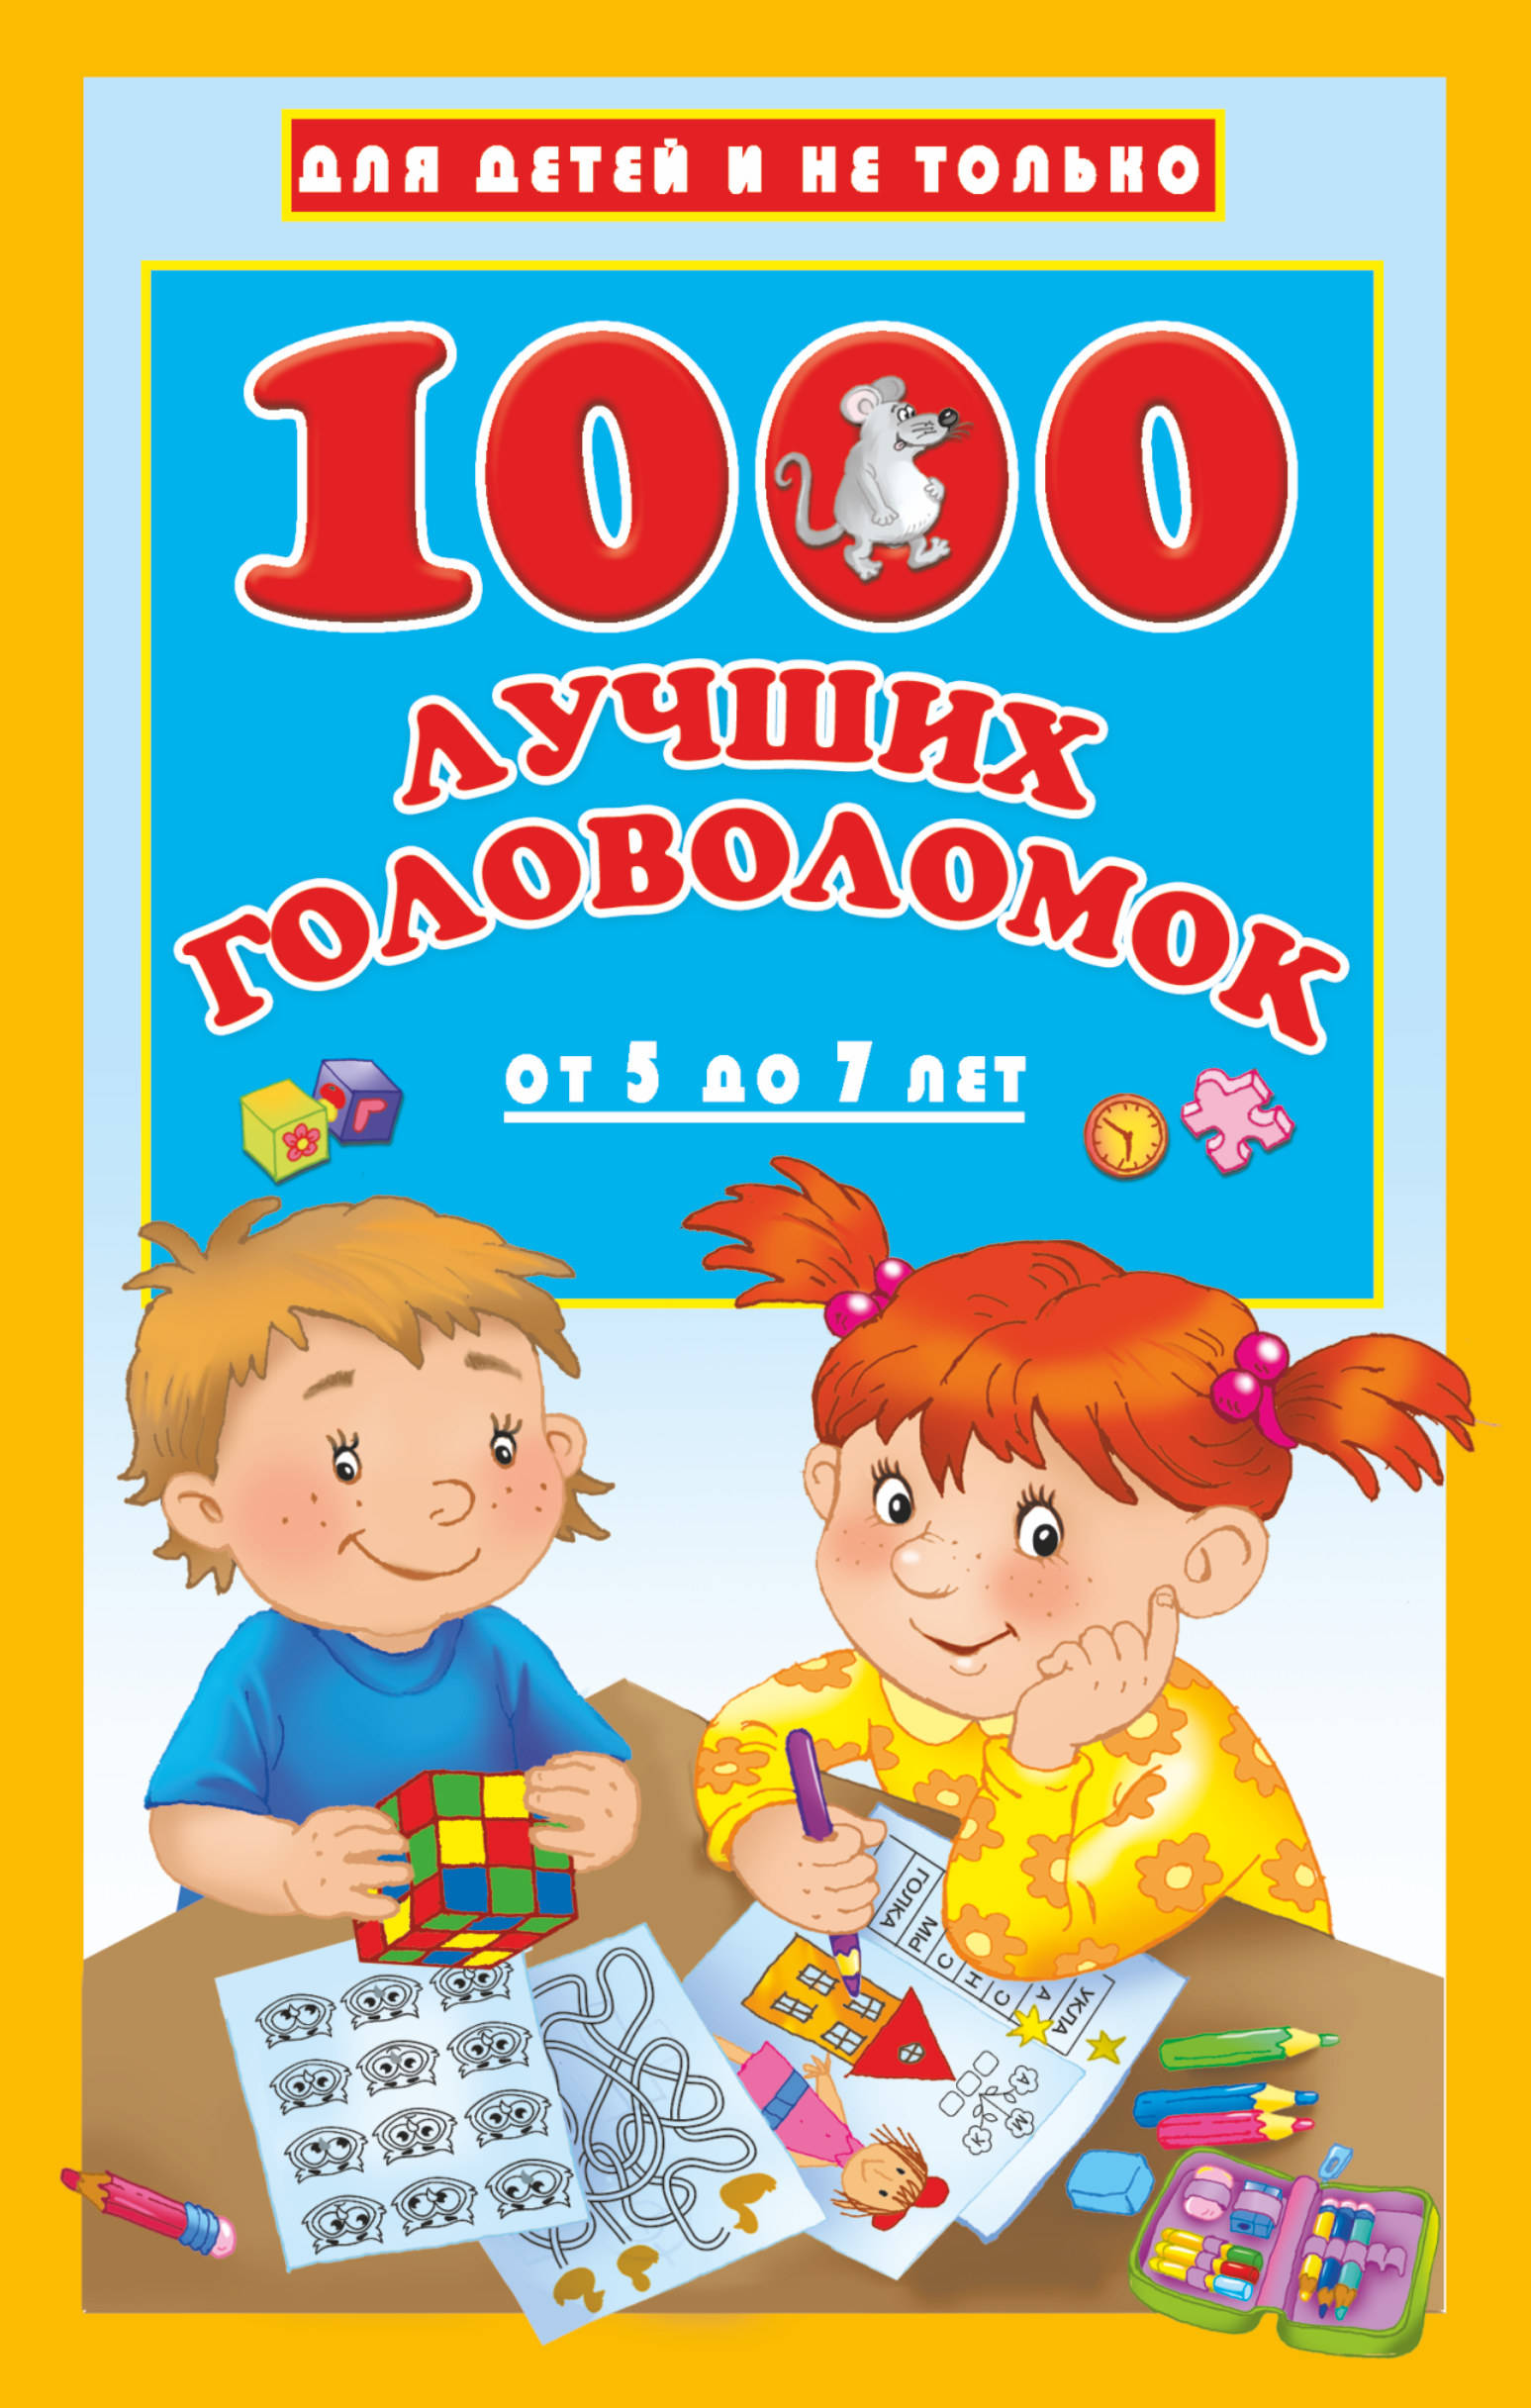 Дмитриева Валентина Геннадьевна 1000 лучших головоломок от 5 до 7 лет - страница 0